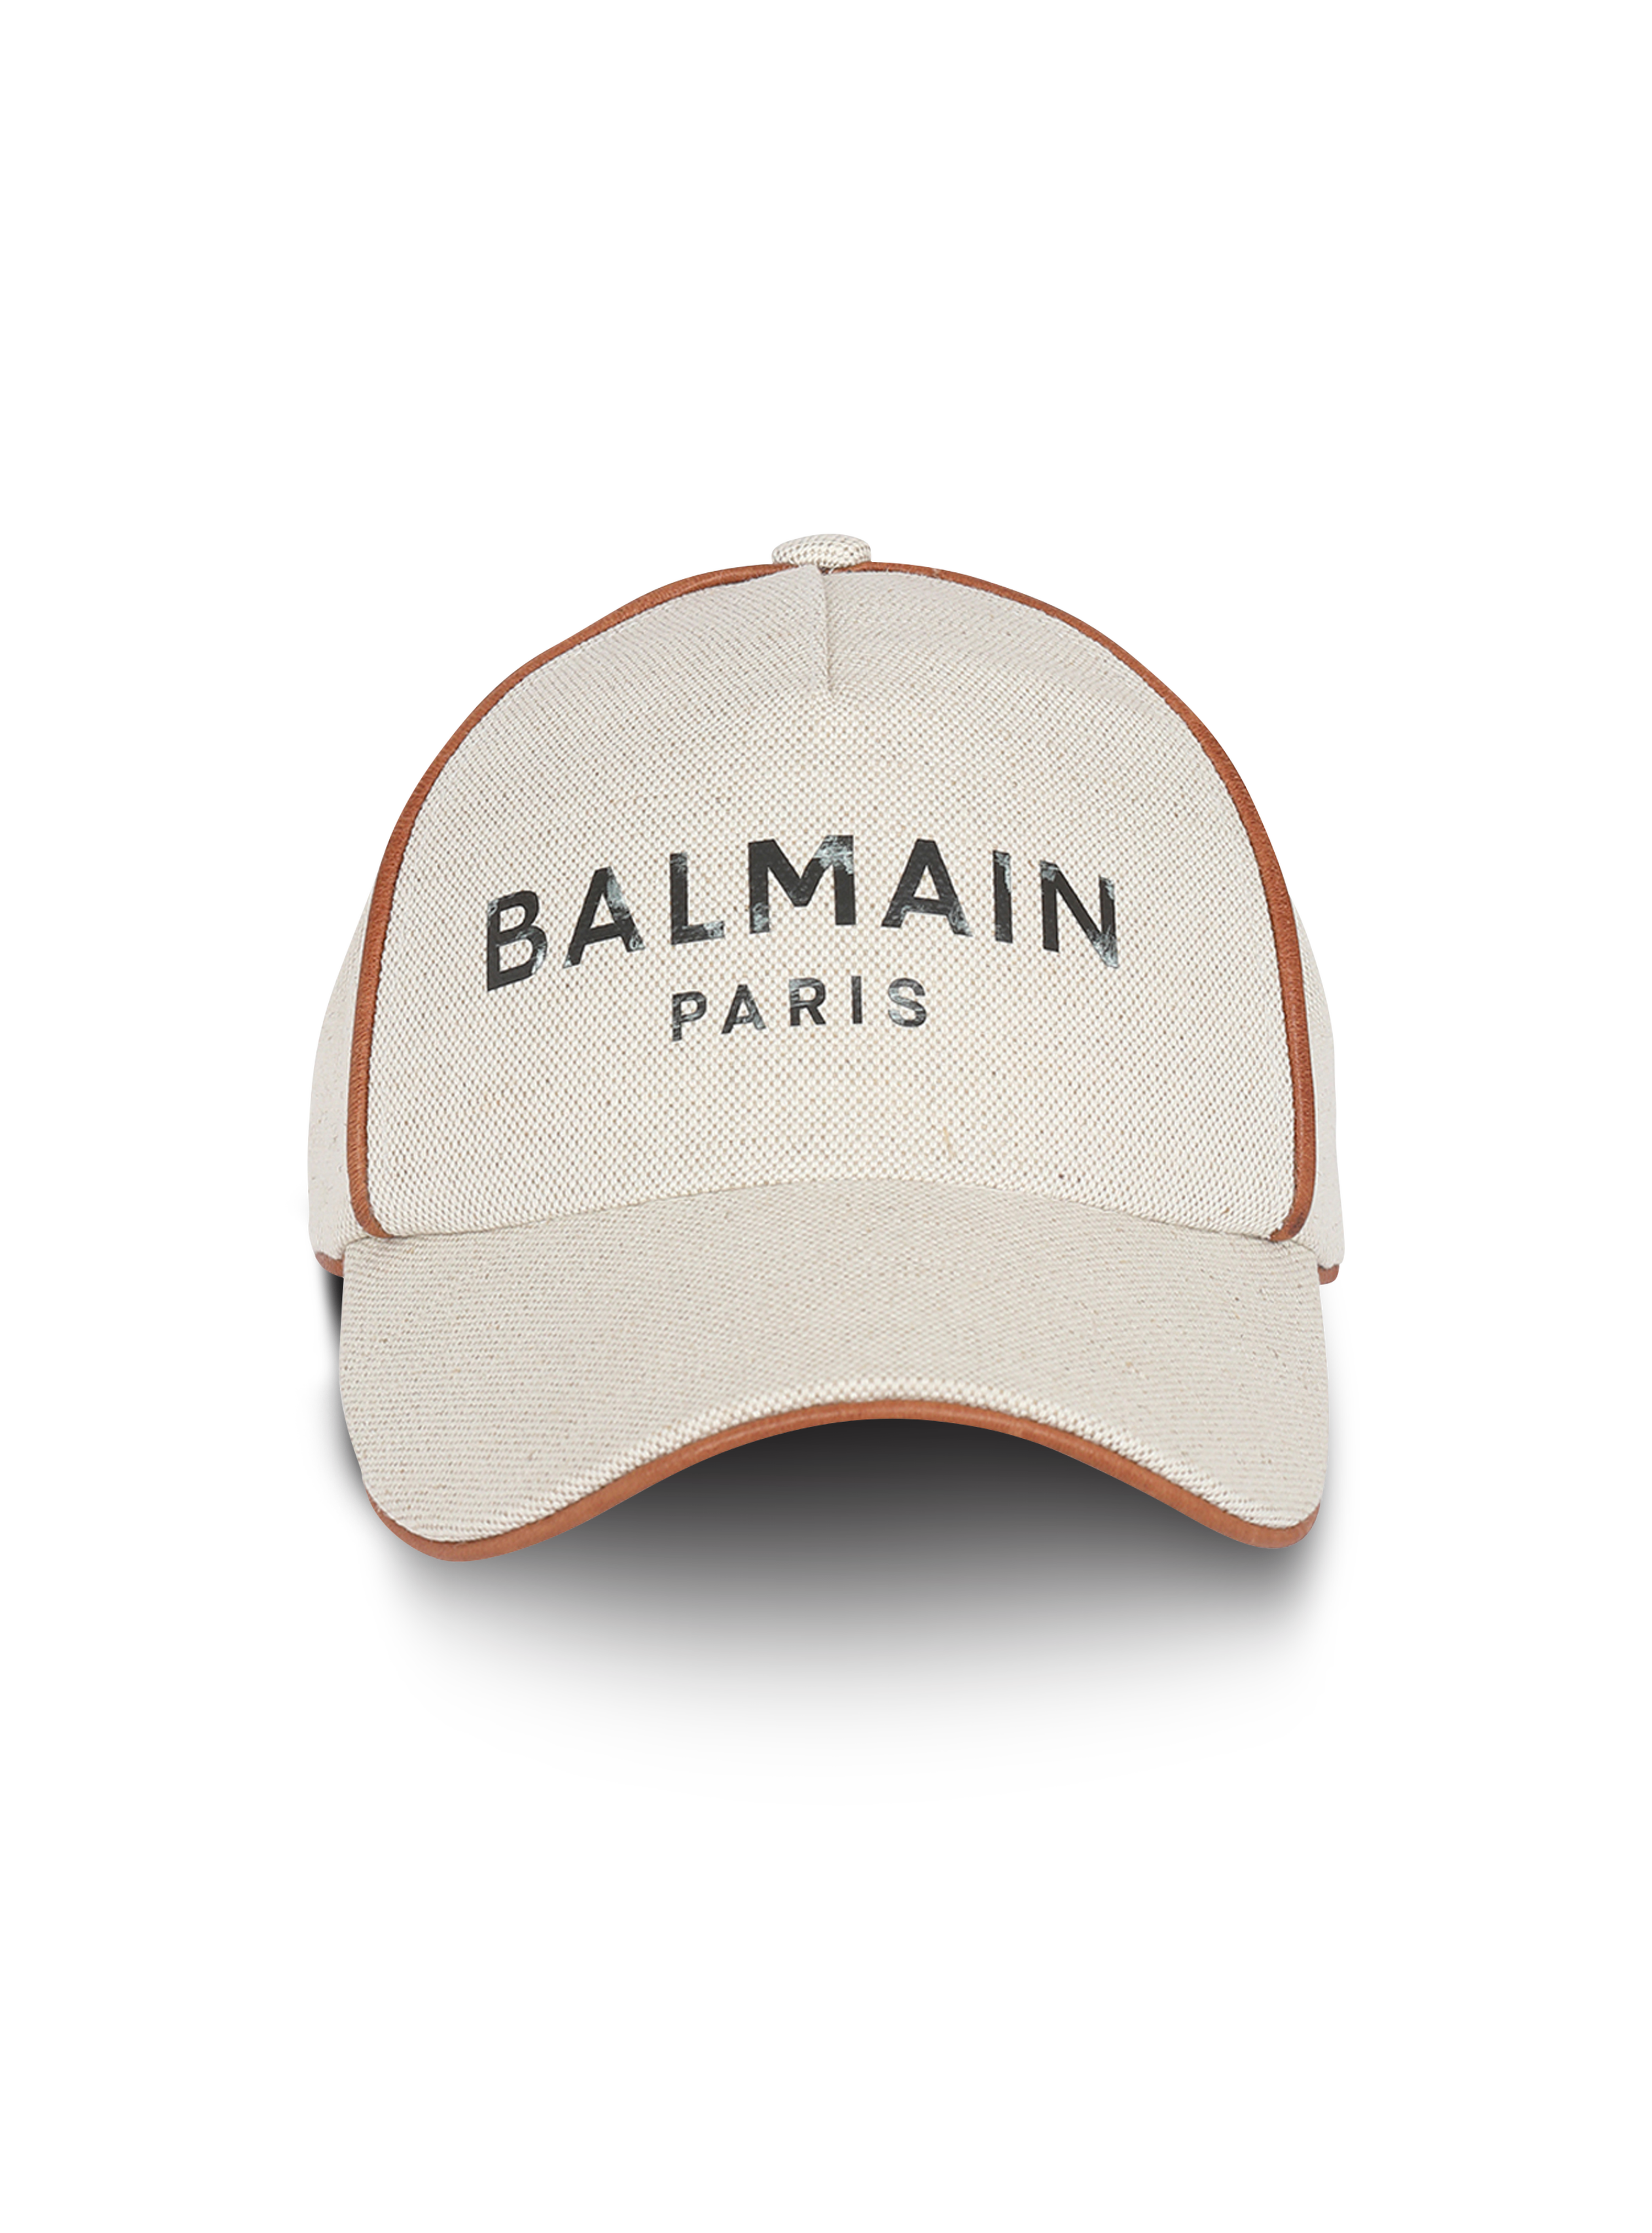 Cotton B-Army cap with Balmain logo, white